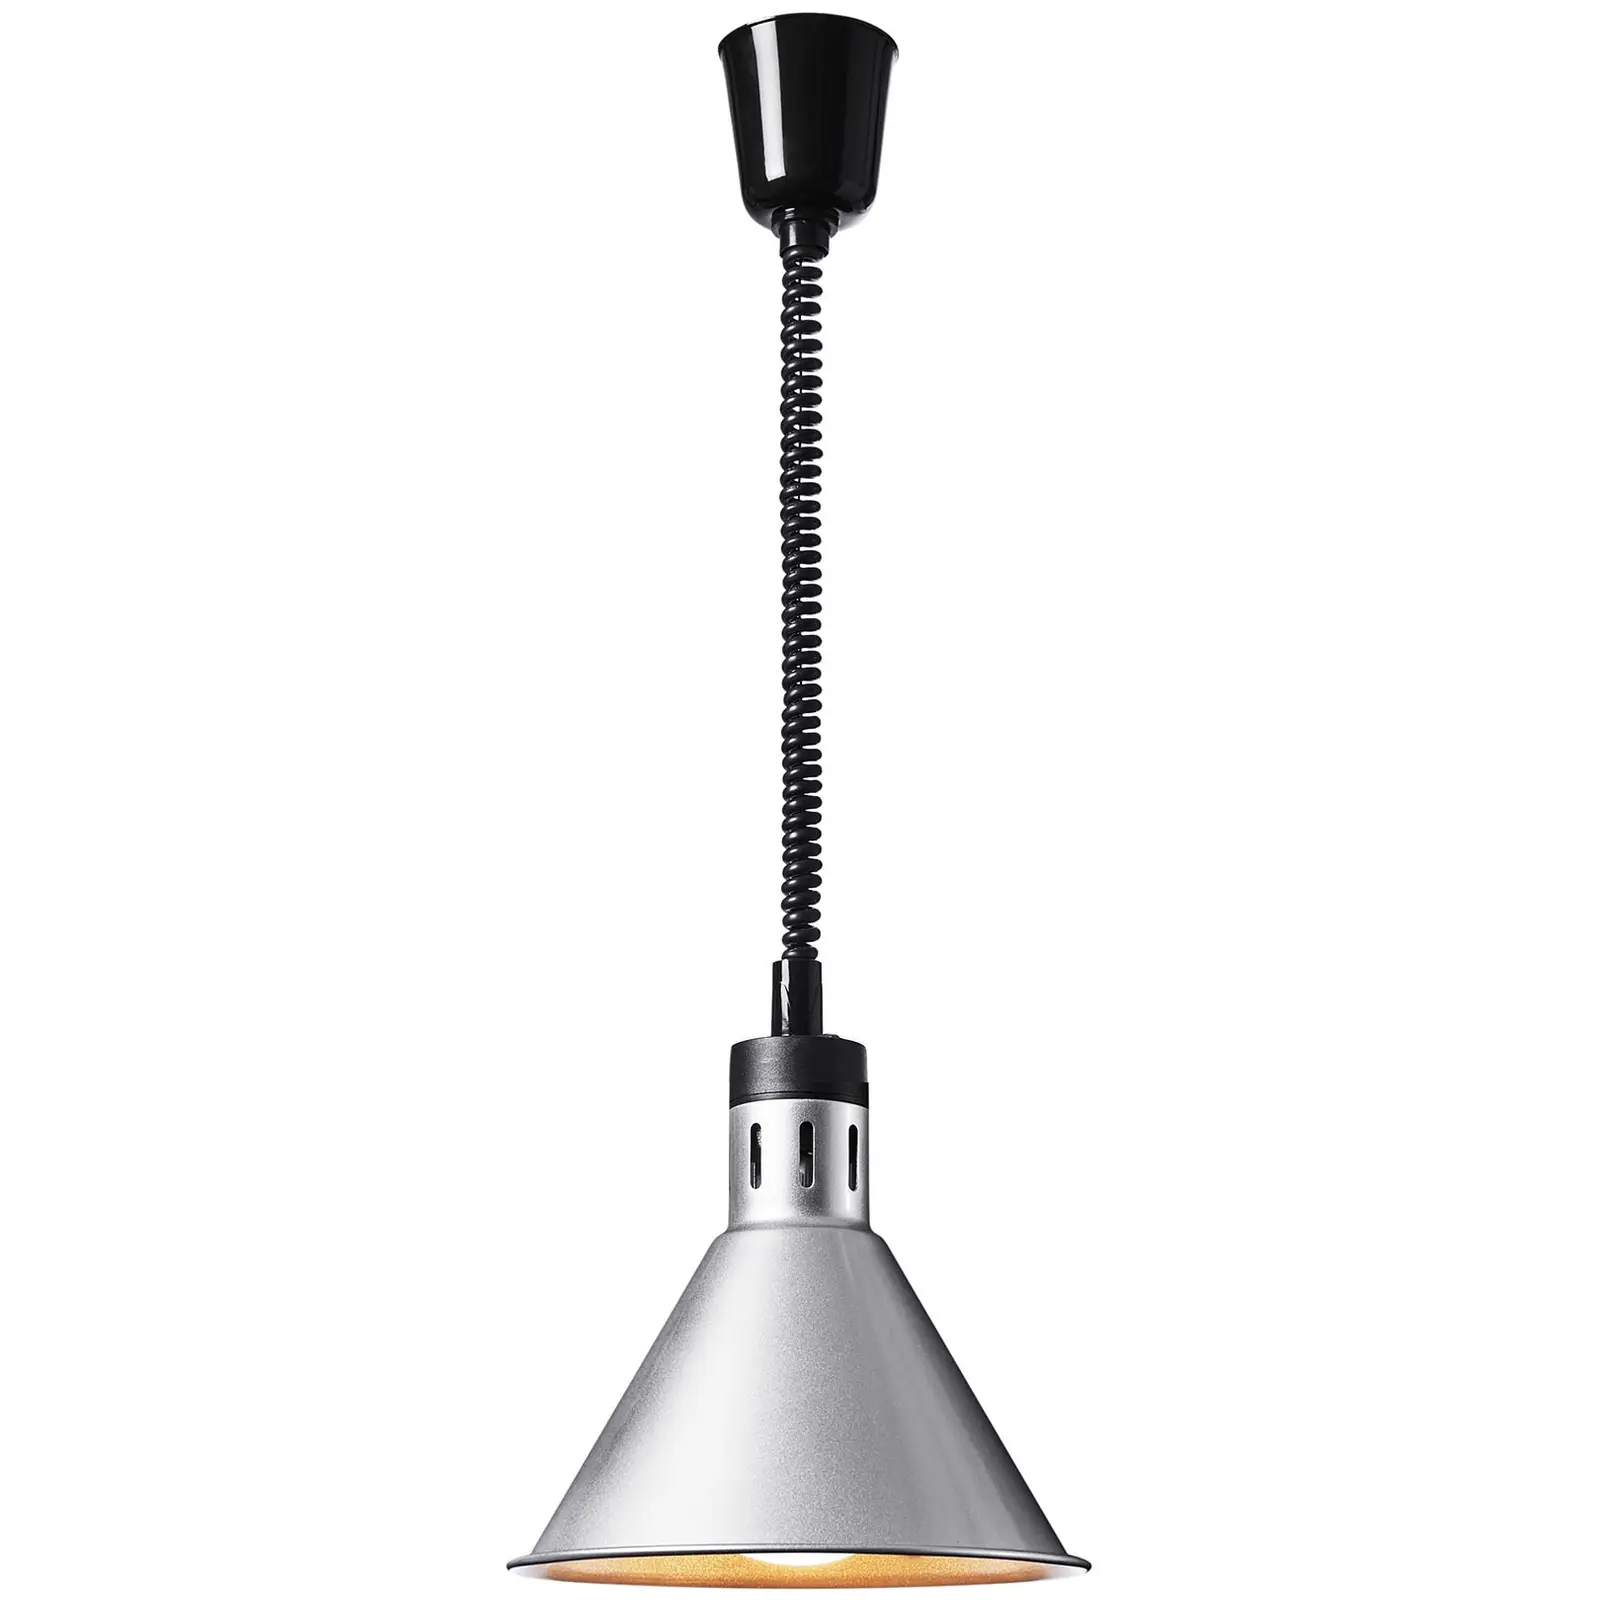 Lampe chauffante - Argent - 27.5 x 27.5 x 31 cm - Royal Catering - Acier